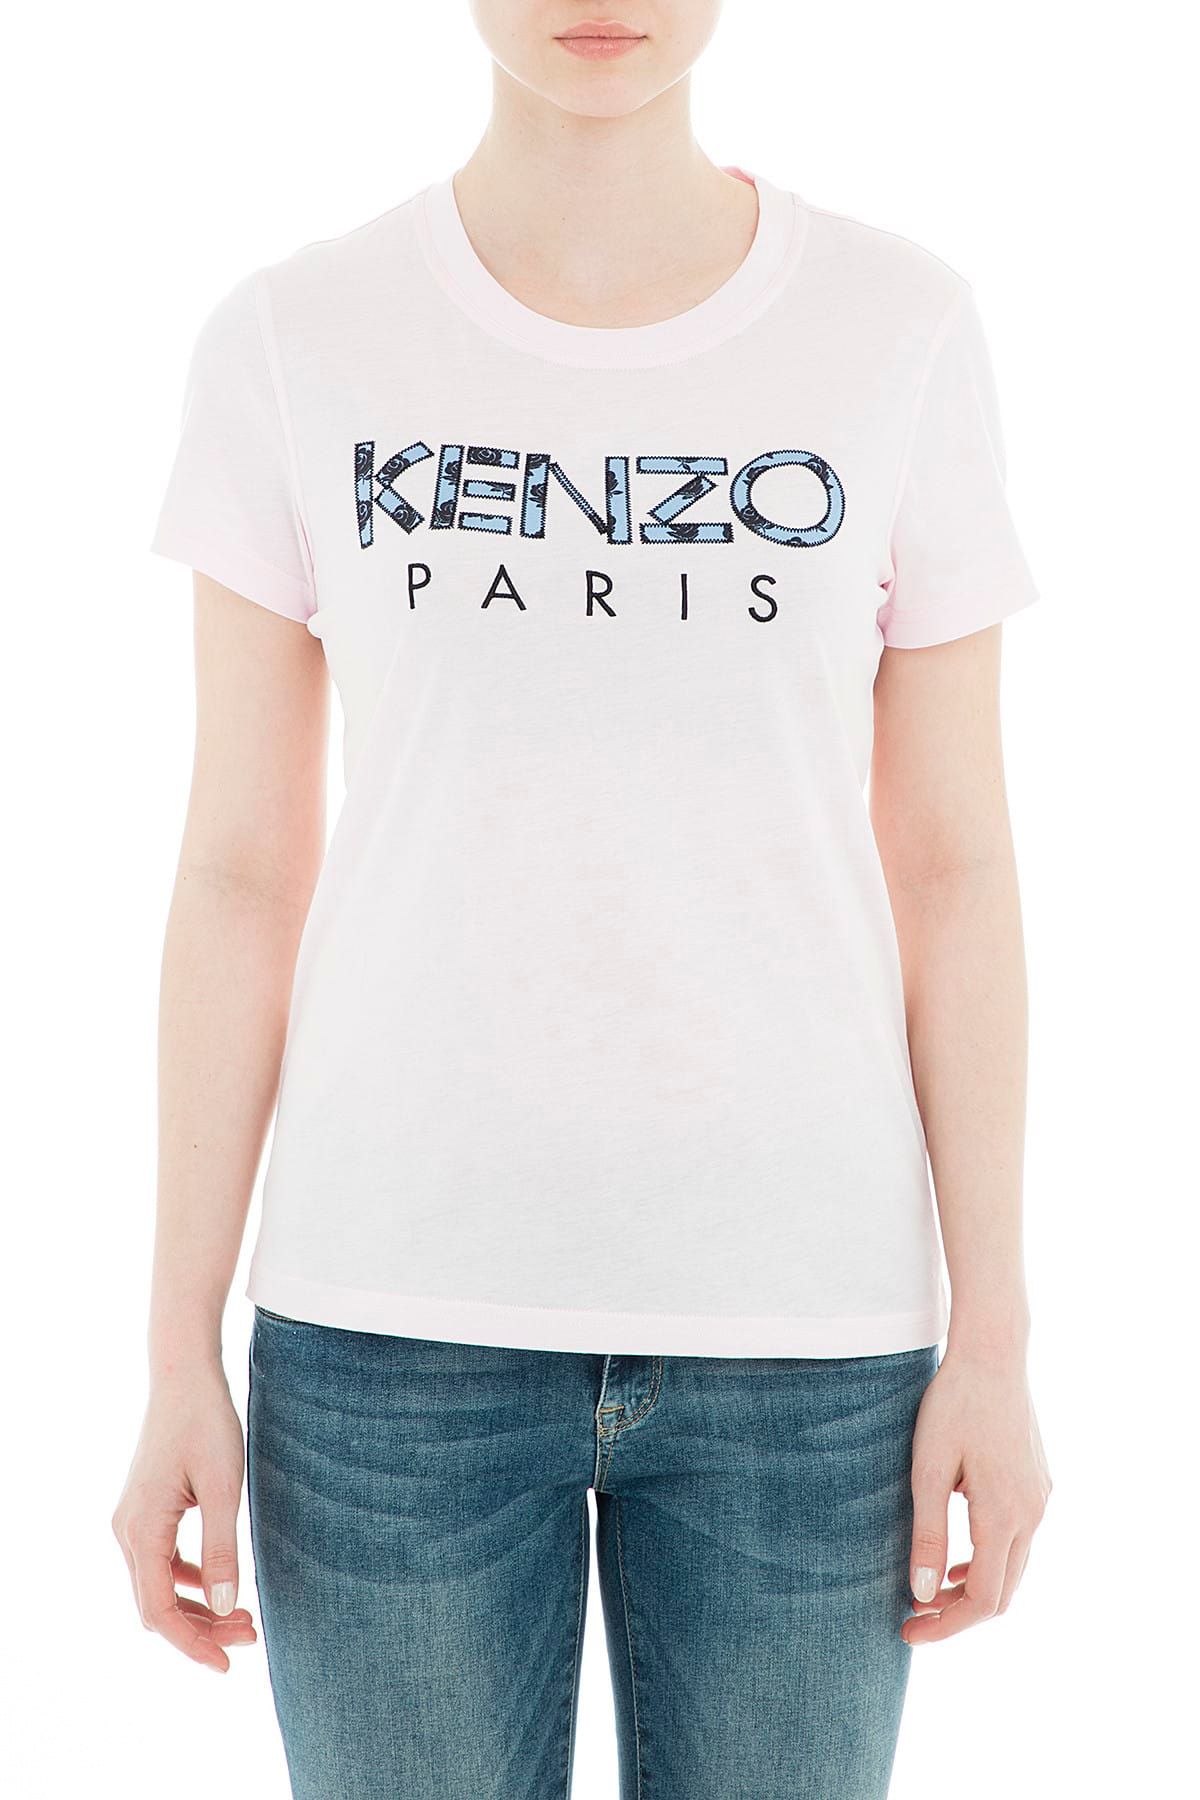 Kenzo Kadın Pudra T-Shirt F95 2TS721 990 33